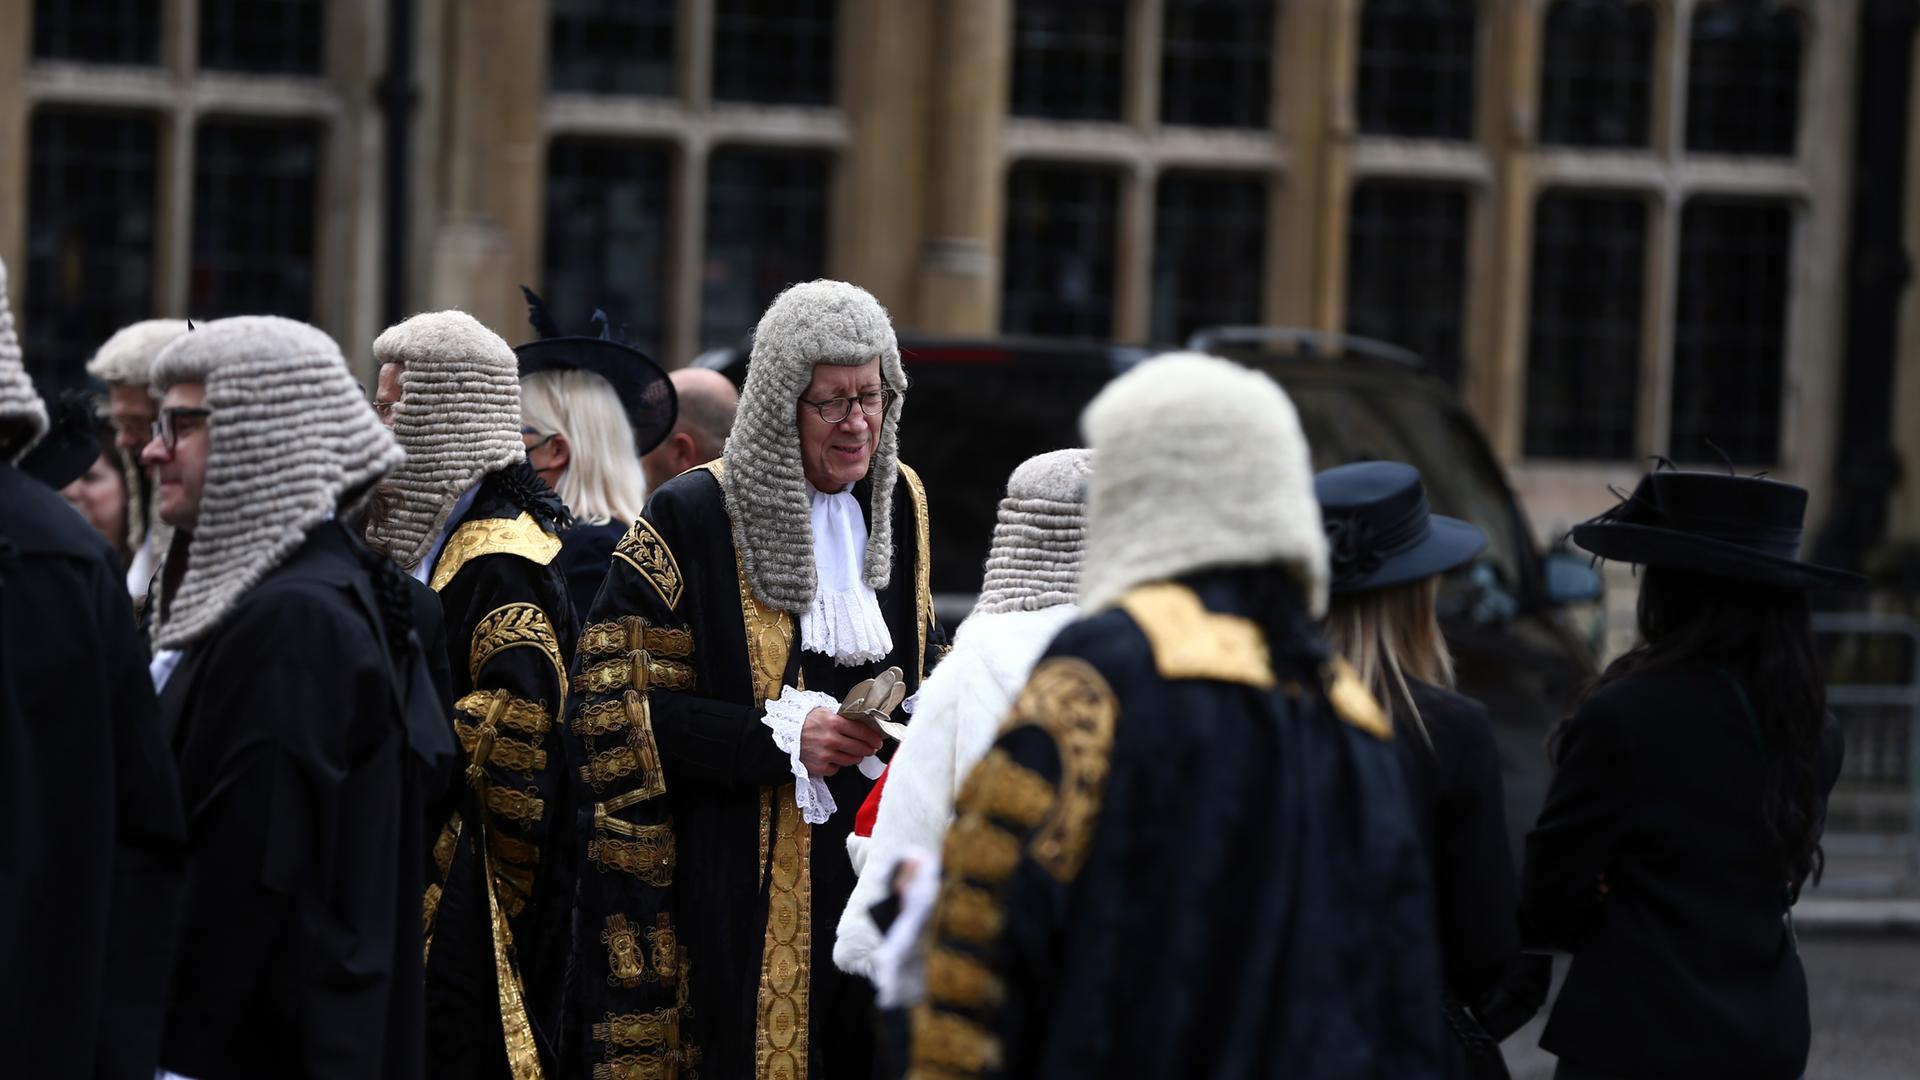 Richter in Robe und mit weißer Perücke stehen am 1. Oktober 2021 zur Eröffnung des neuen Gerichtsjahres vor Westminster Abbey in London.